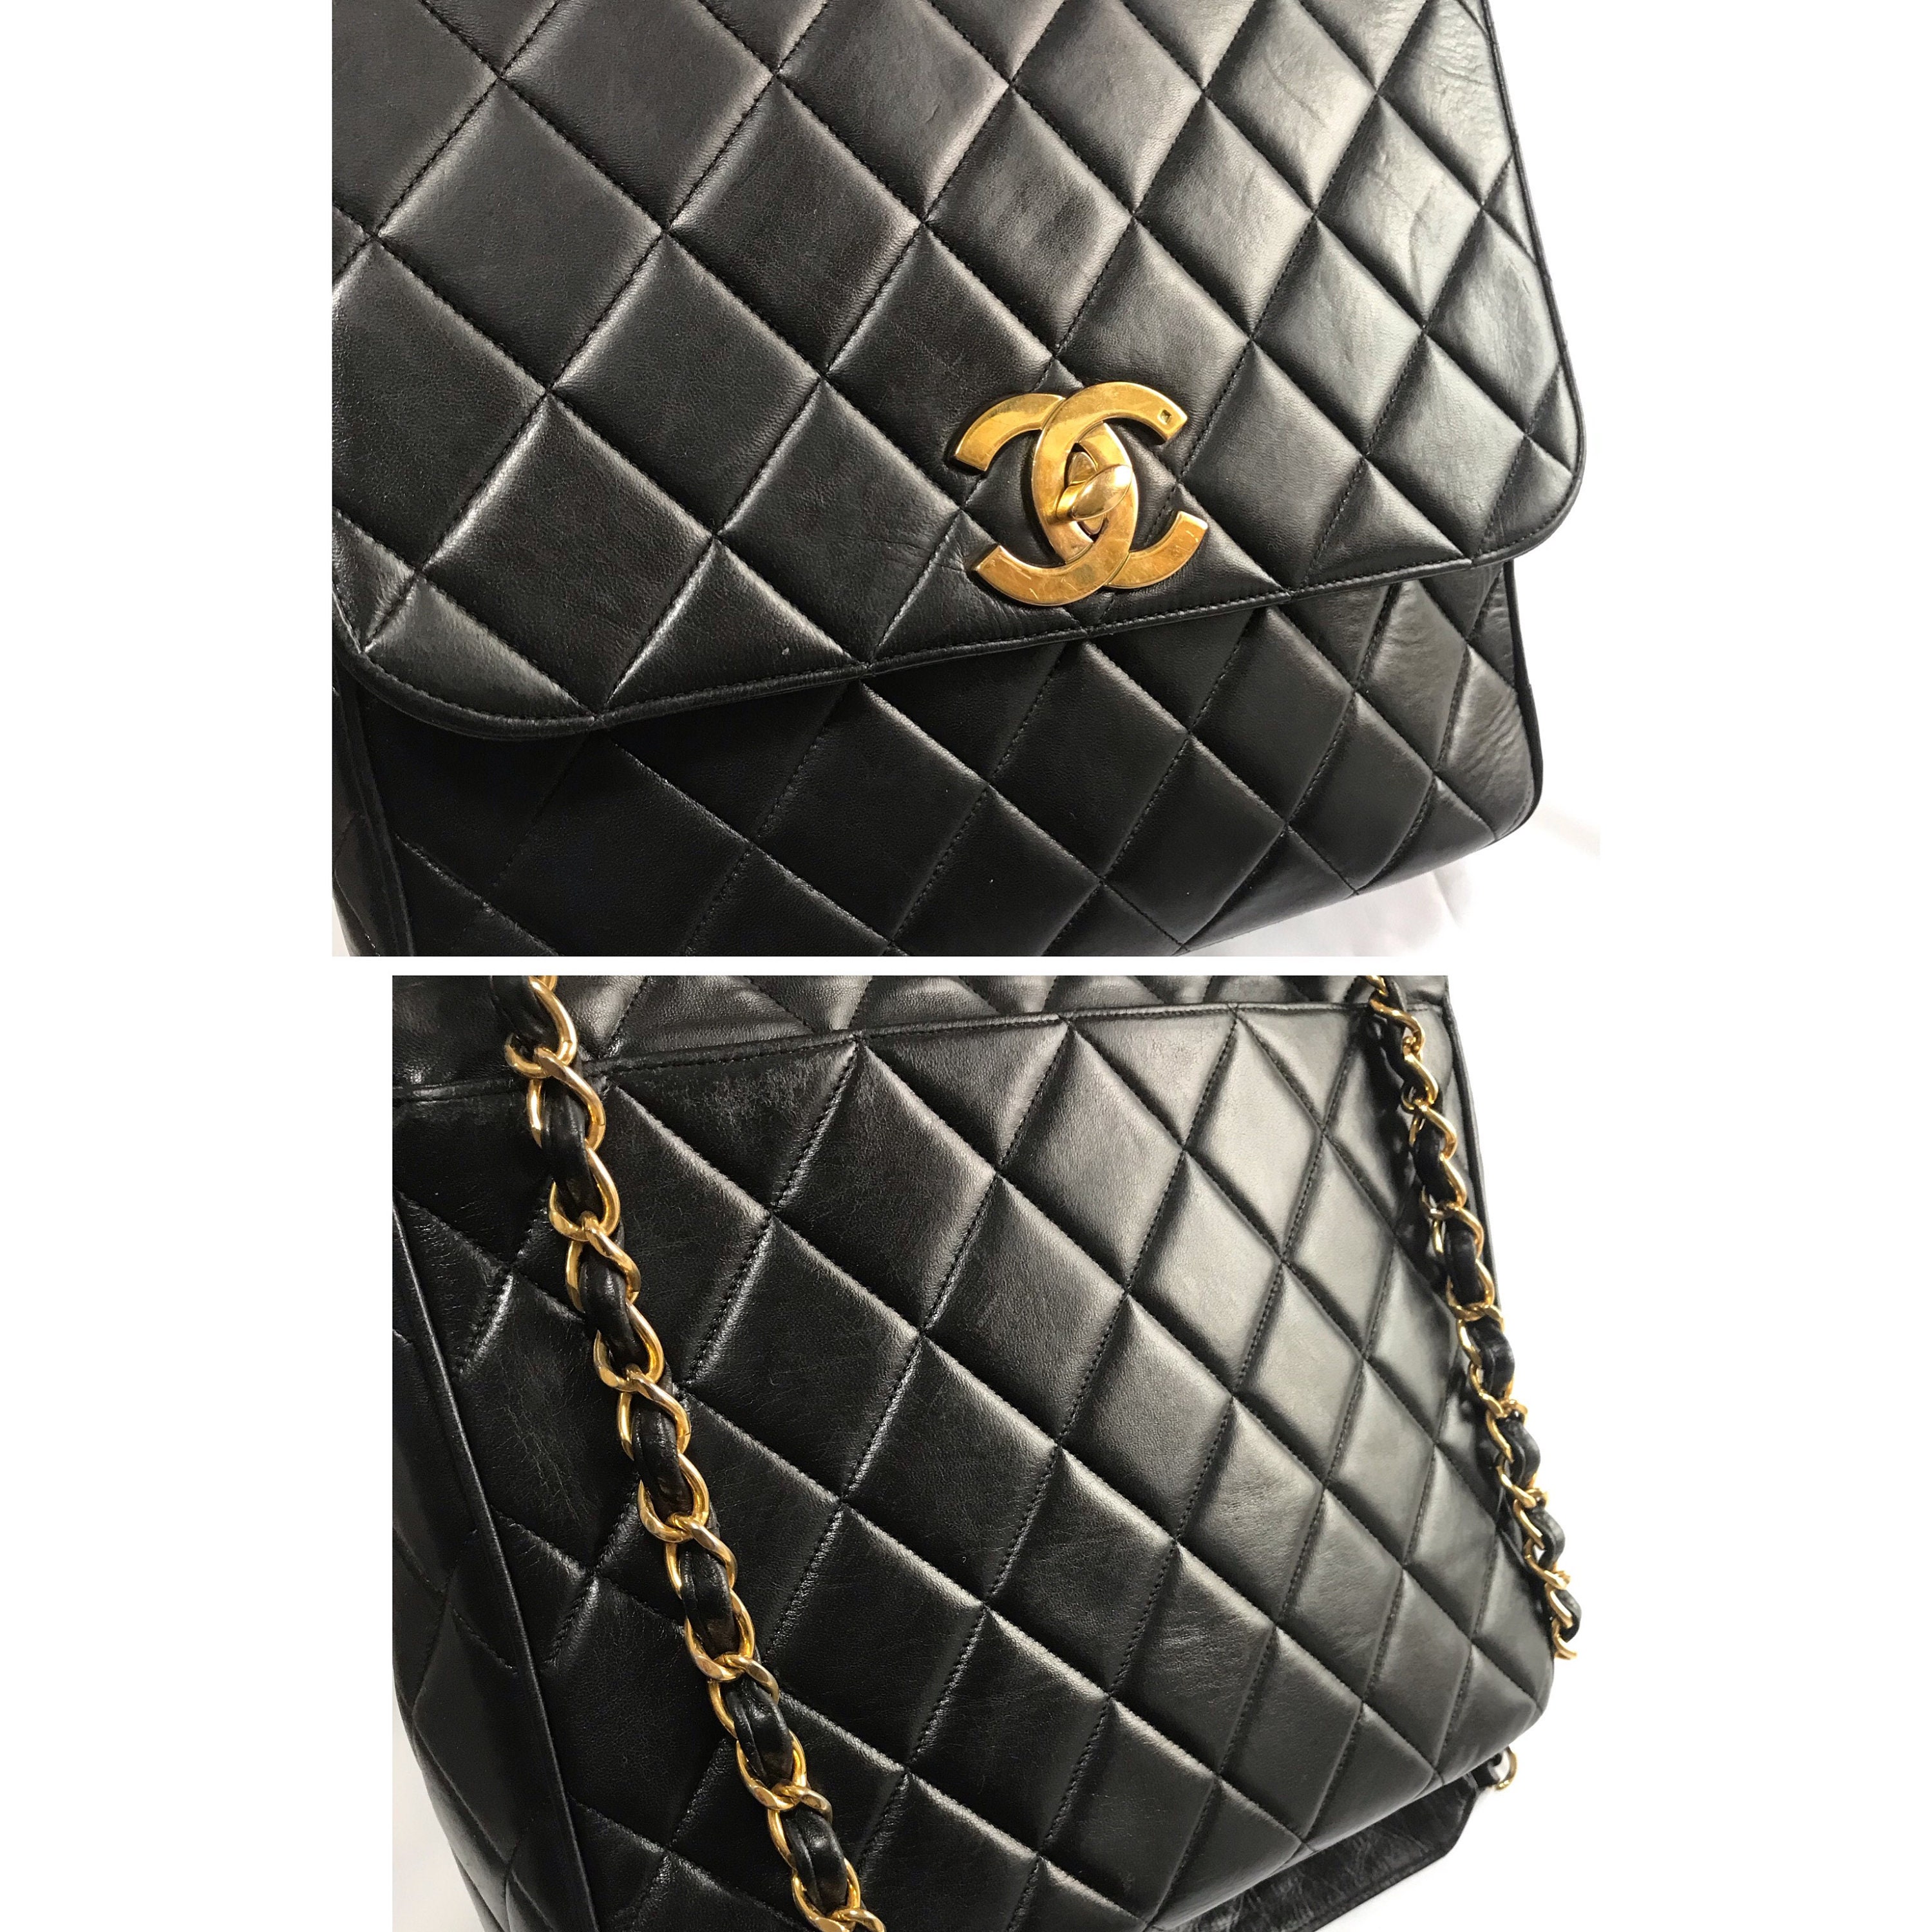 Vintage Chanel Medium Square Double Flap Bag